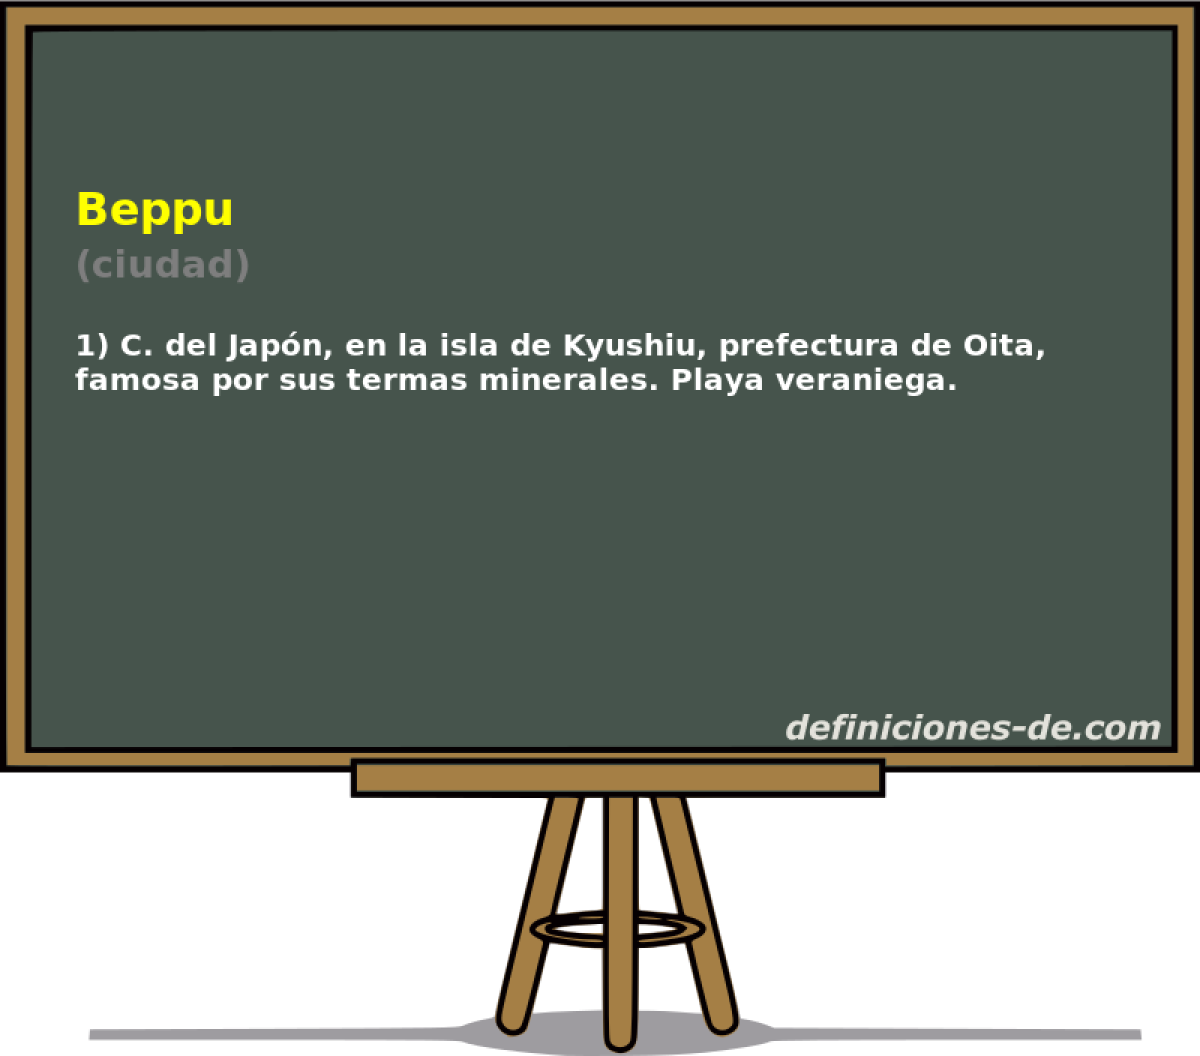 Beppu (ciudad)